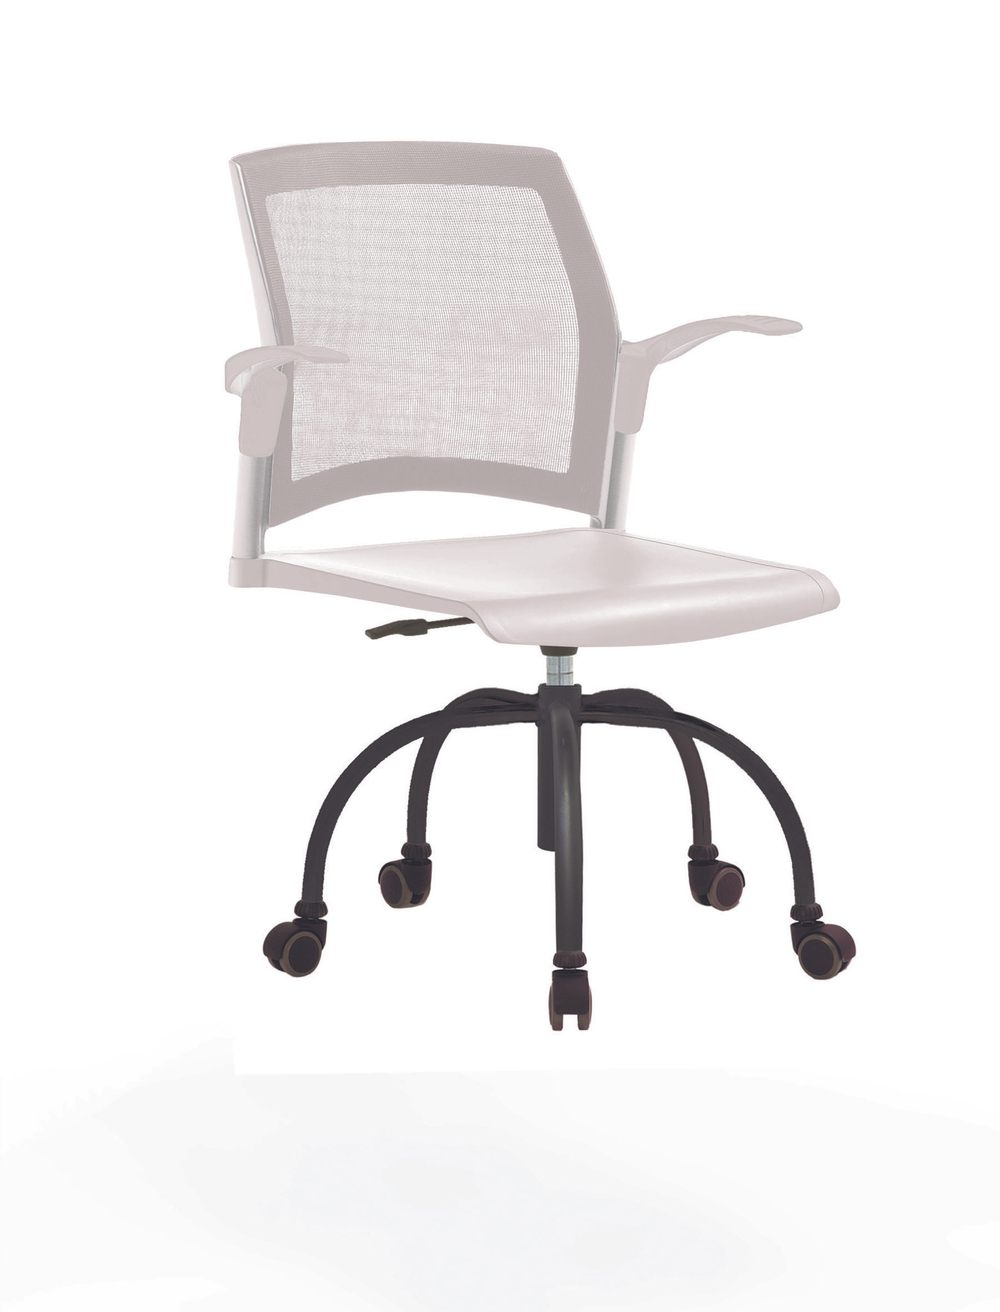 Кресло Rewind каркас черный, пластик белый, база паук краска черная, с открытыми подлокотниками, спинка-сетка